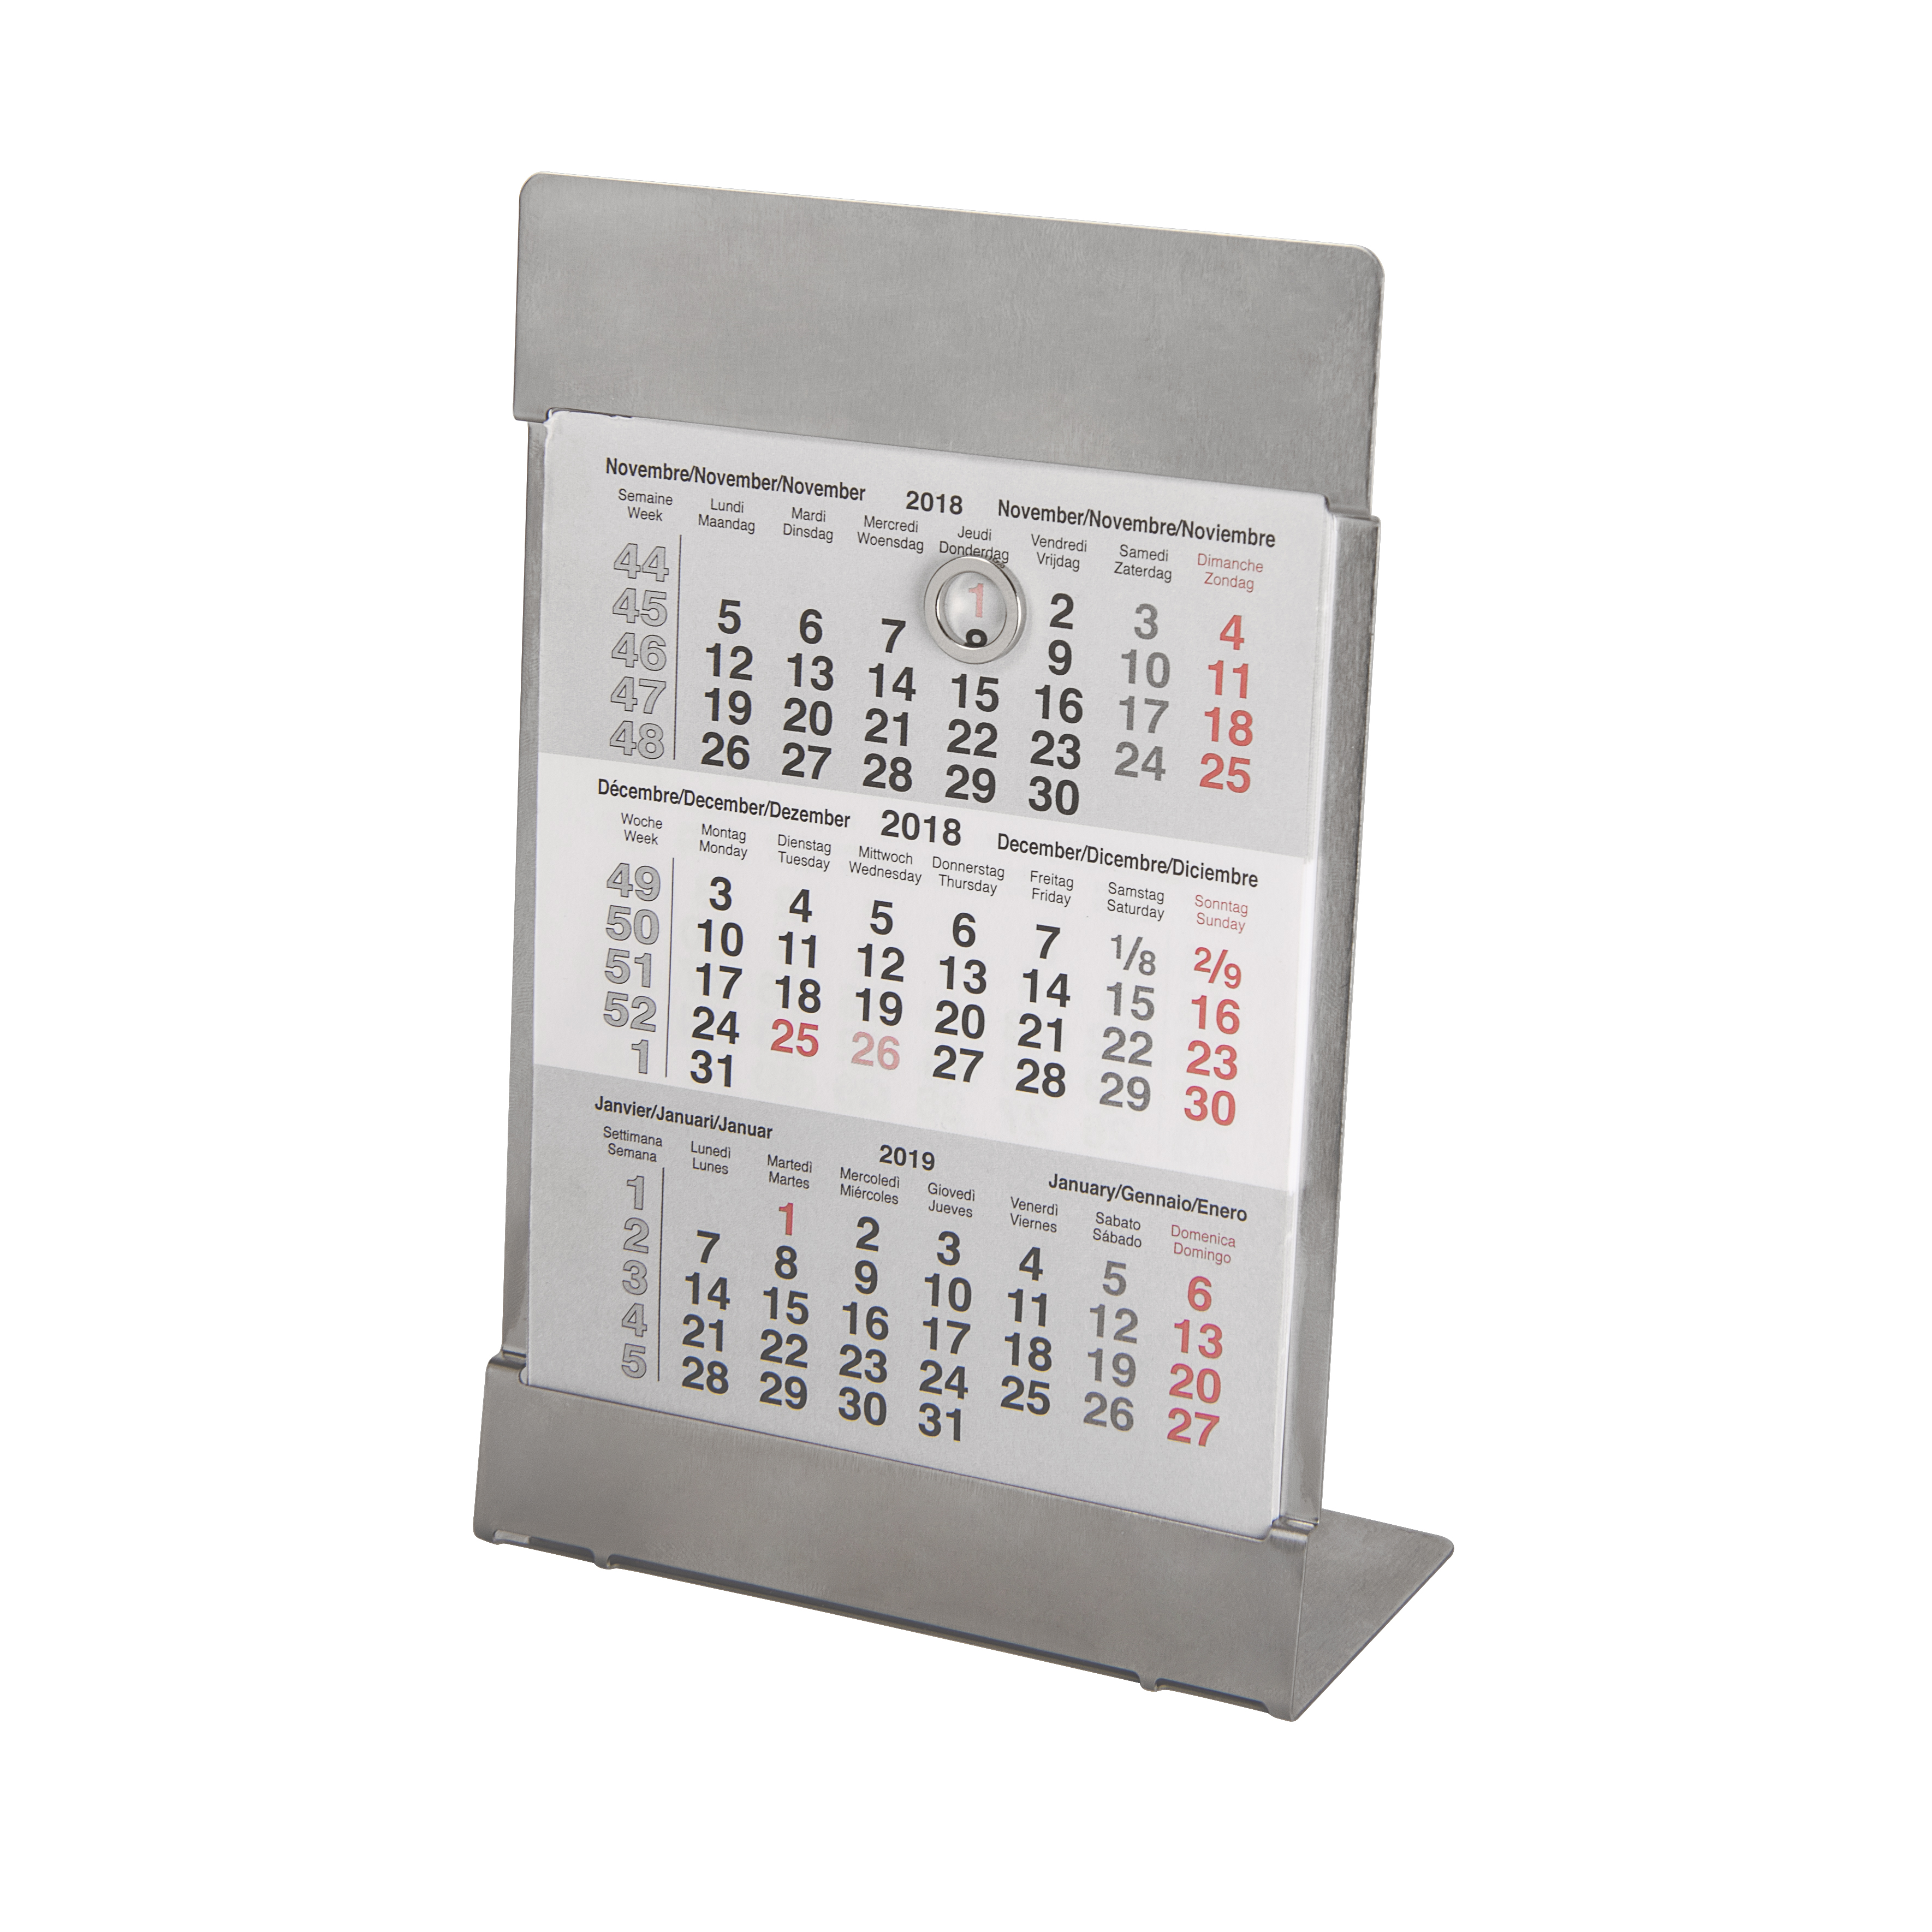 Купить металлический календарь. Календарь настольный; размер 18*11,5 см, цвет- серебро, сталь. Календарь настольный. Металлический календарь. Календарь из металла.